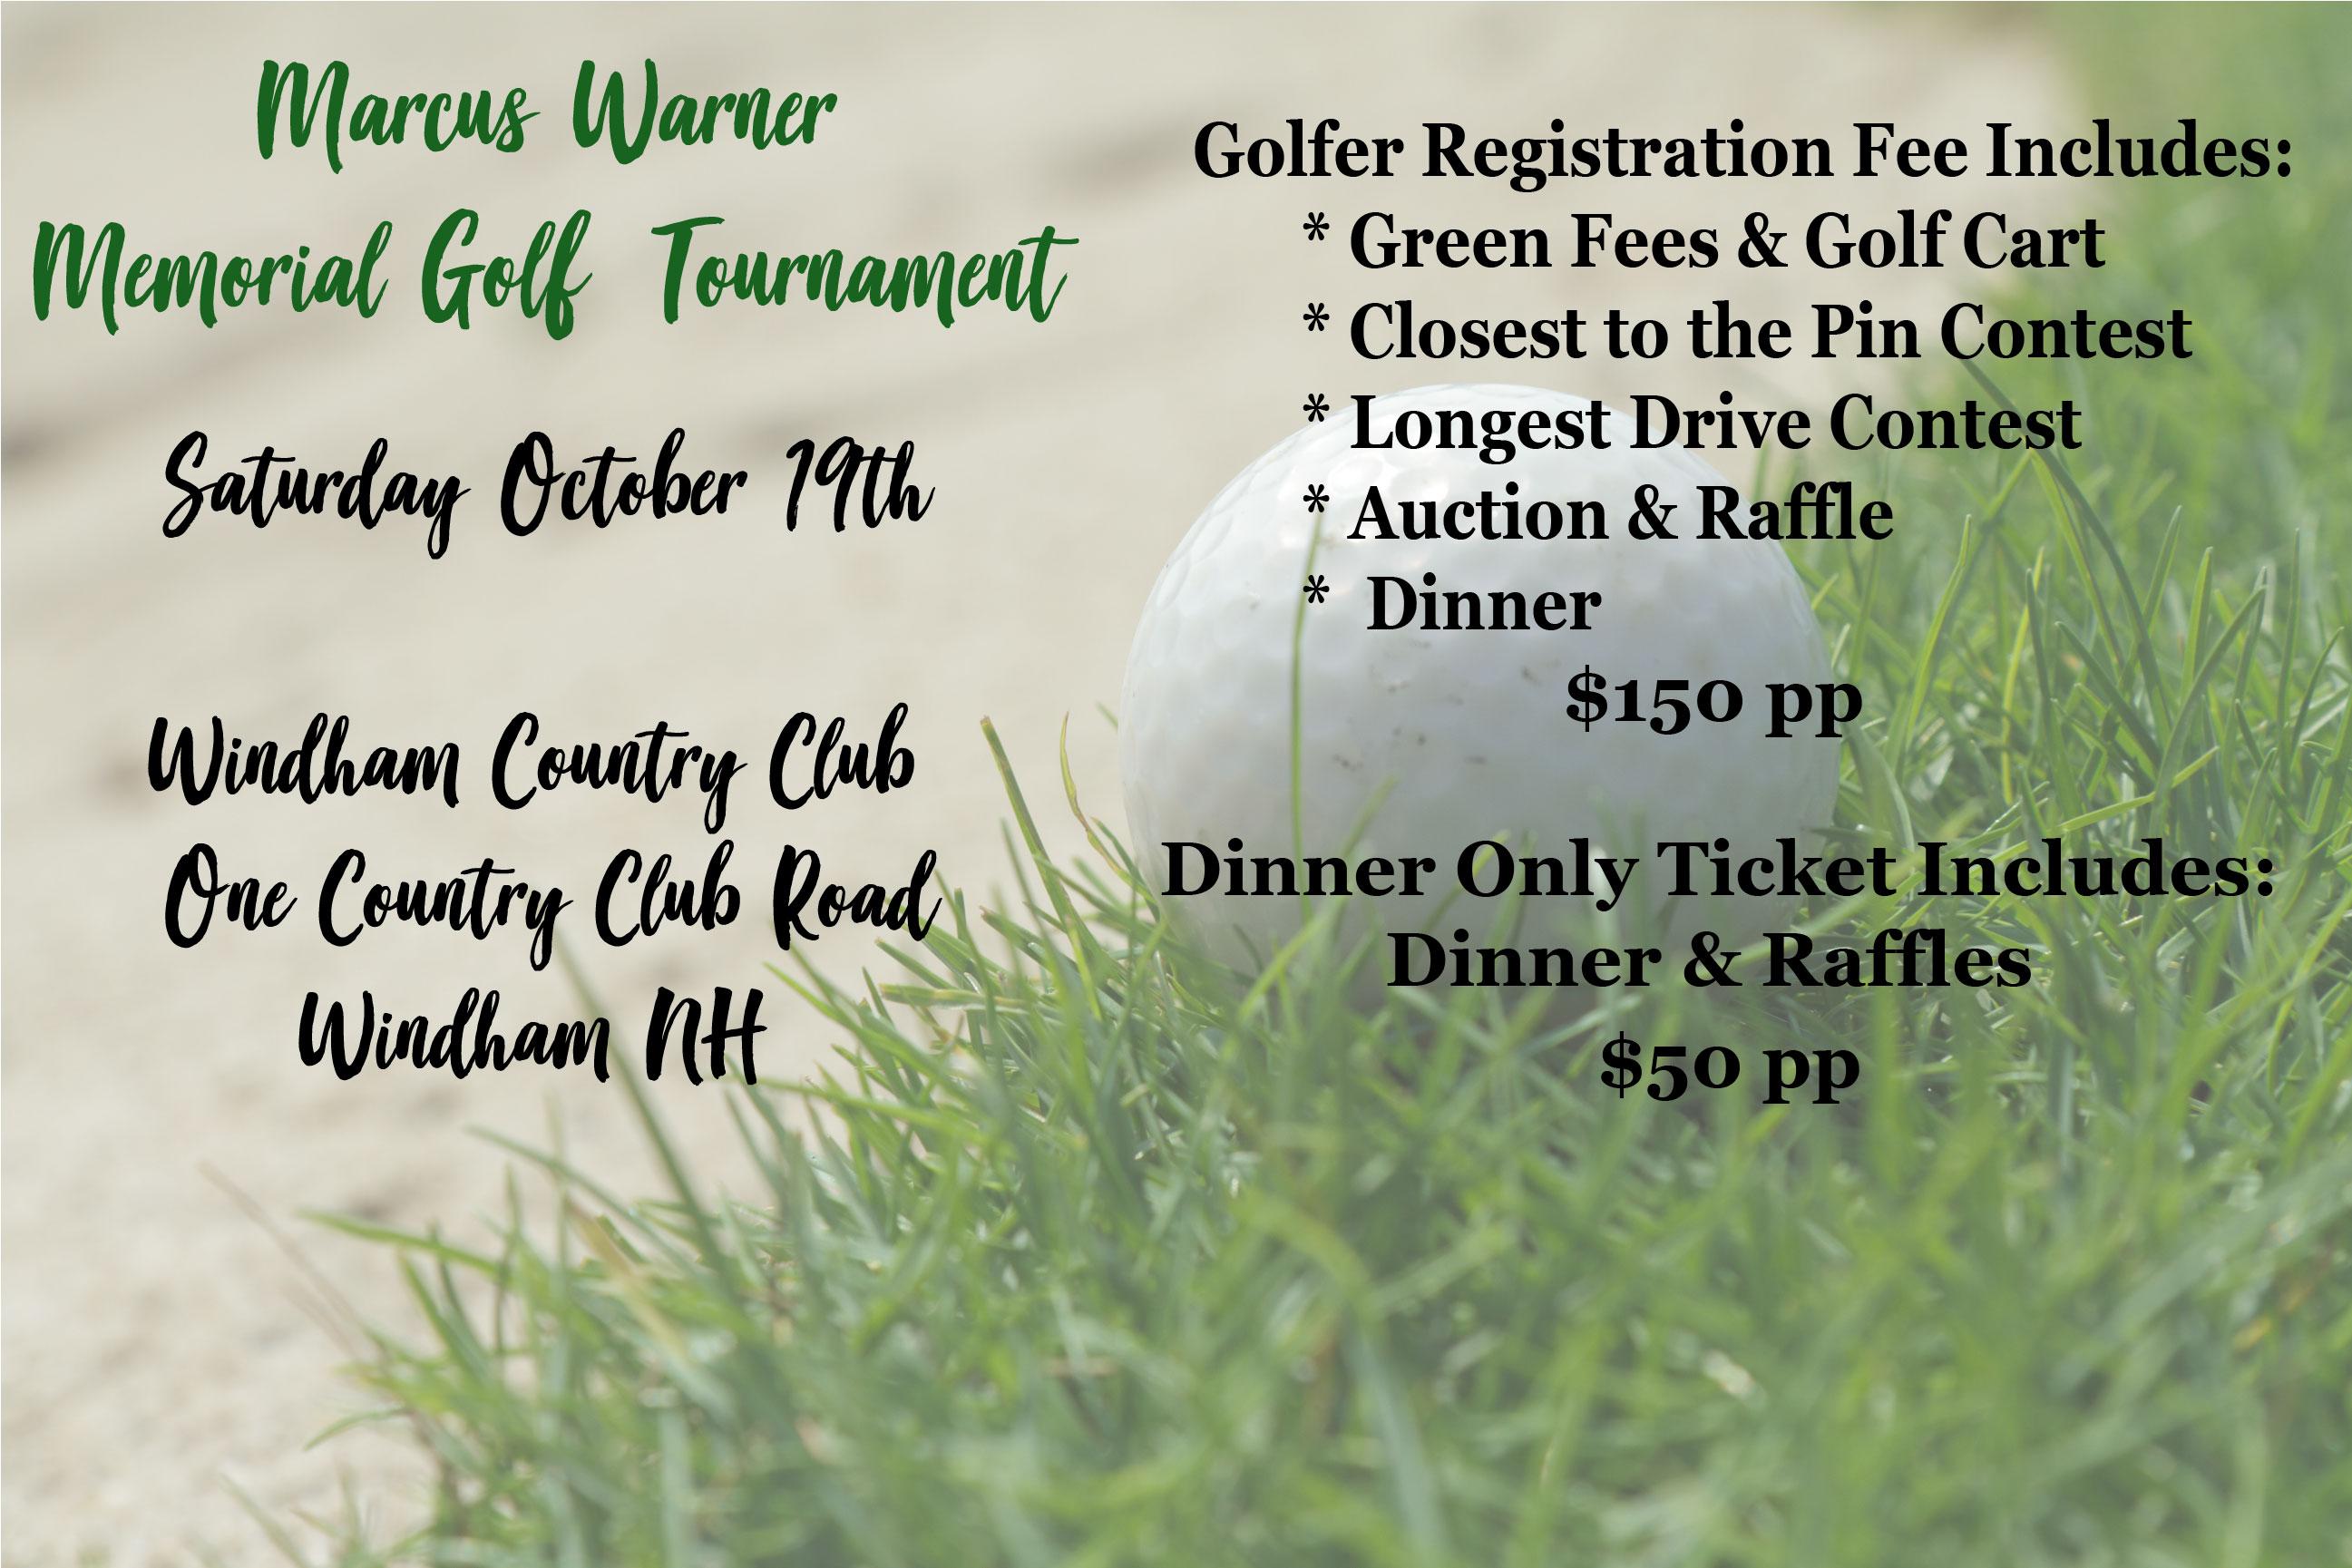 Marcus Warner Memorial Golf Tournament